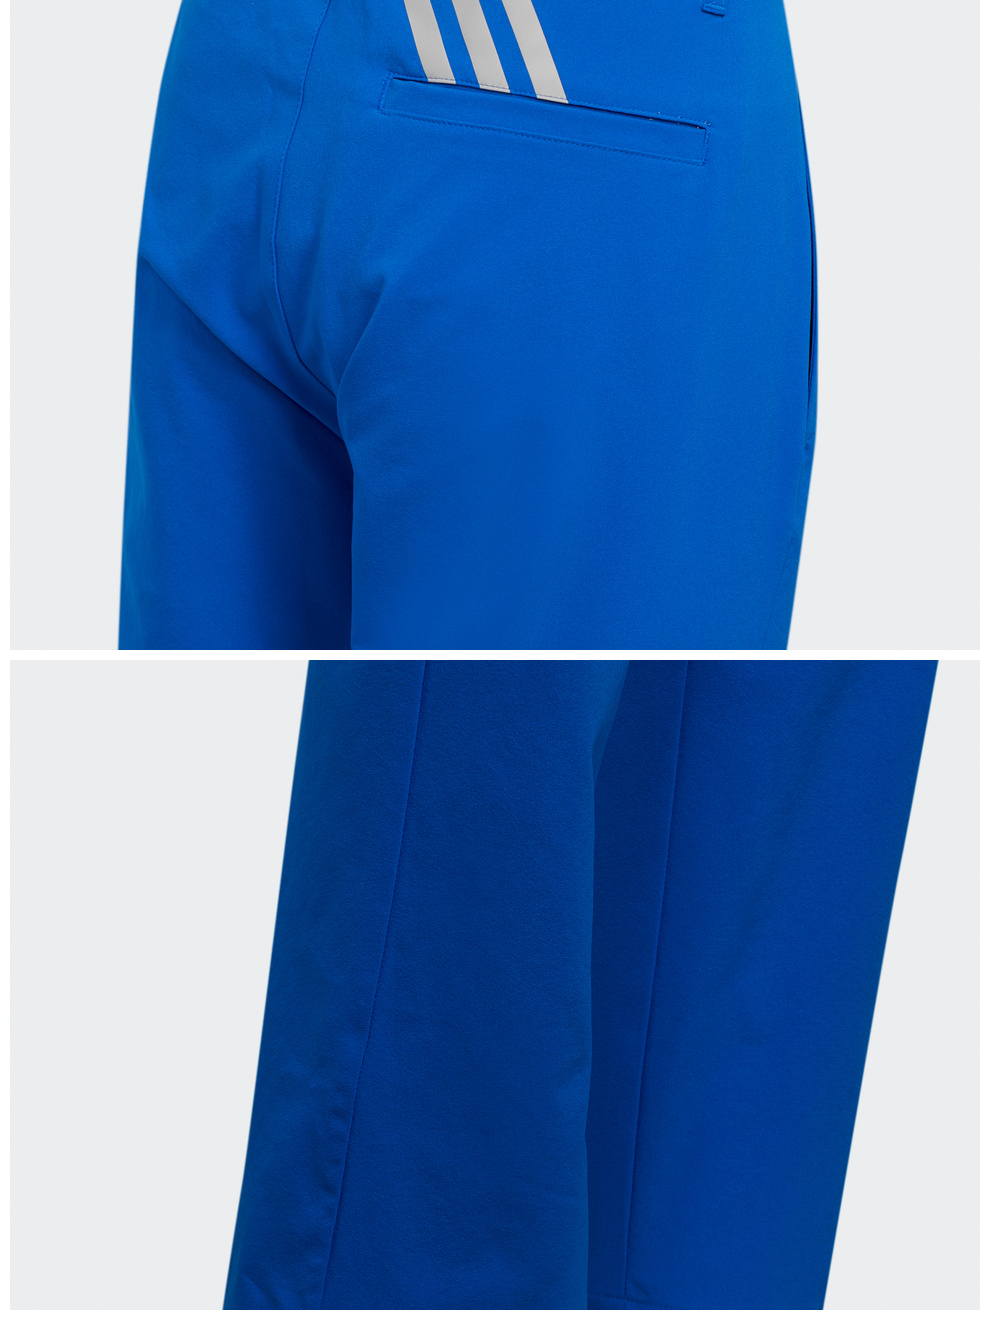 【新品】Adidas阿迪达斯高尔夫运动裤男士青少年长裤golf户外长裤